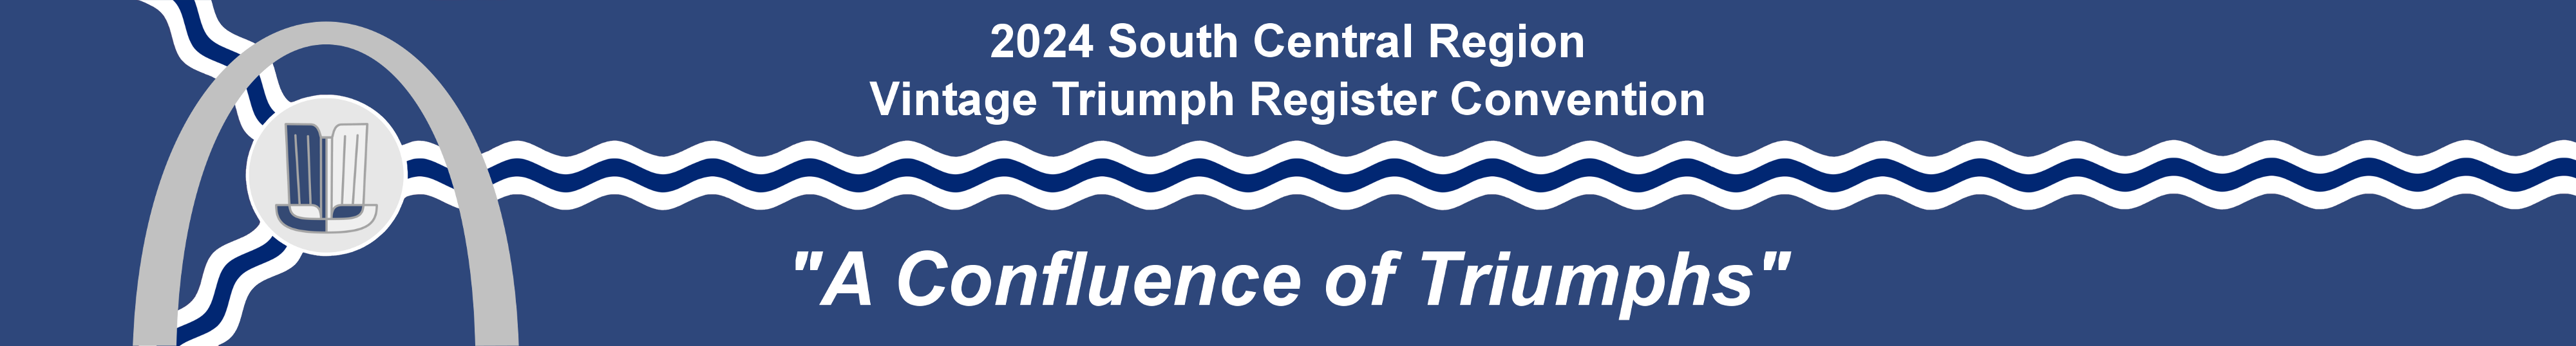 2024 South Central Region Vintage Triumph Register Convention - "A Confluence of Triumphs"